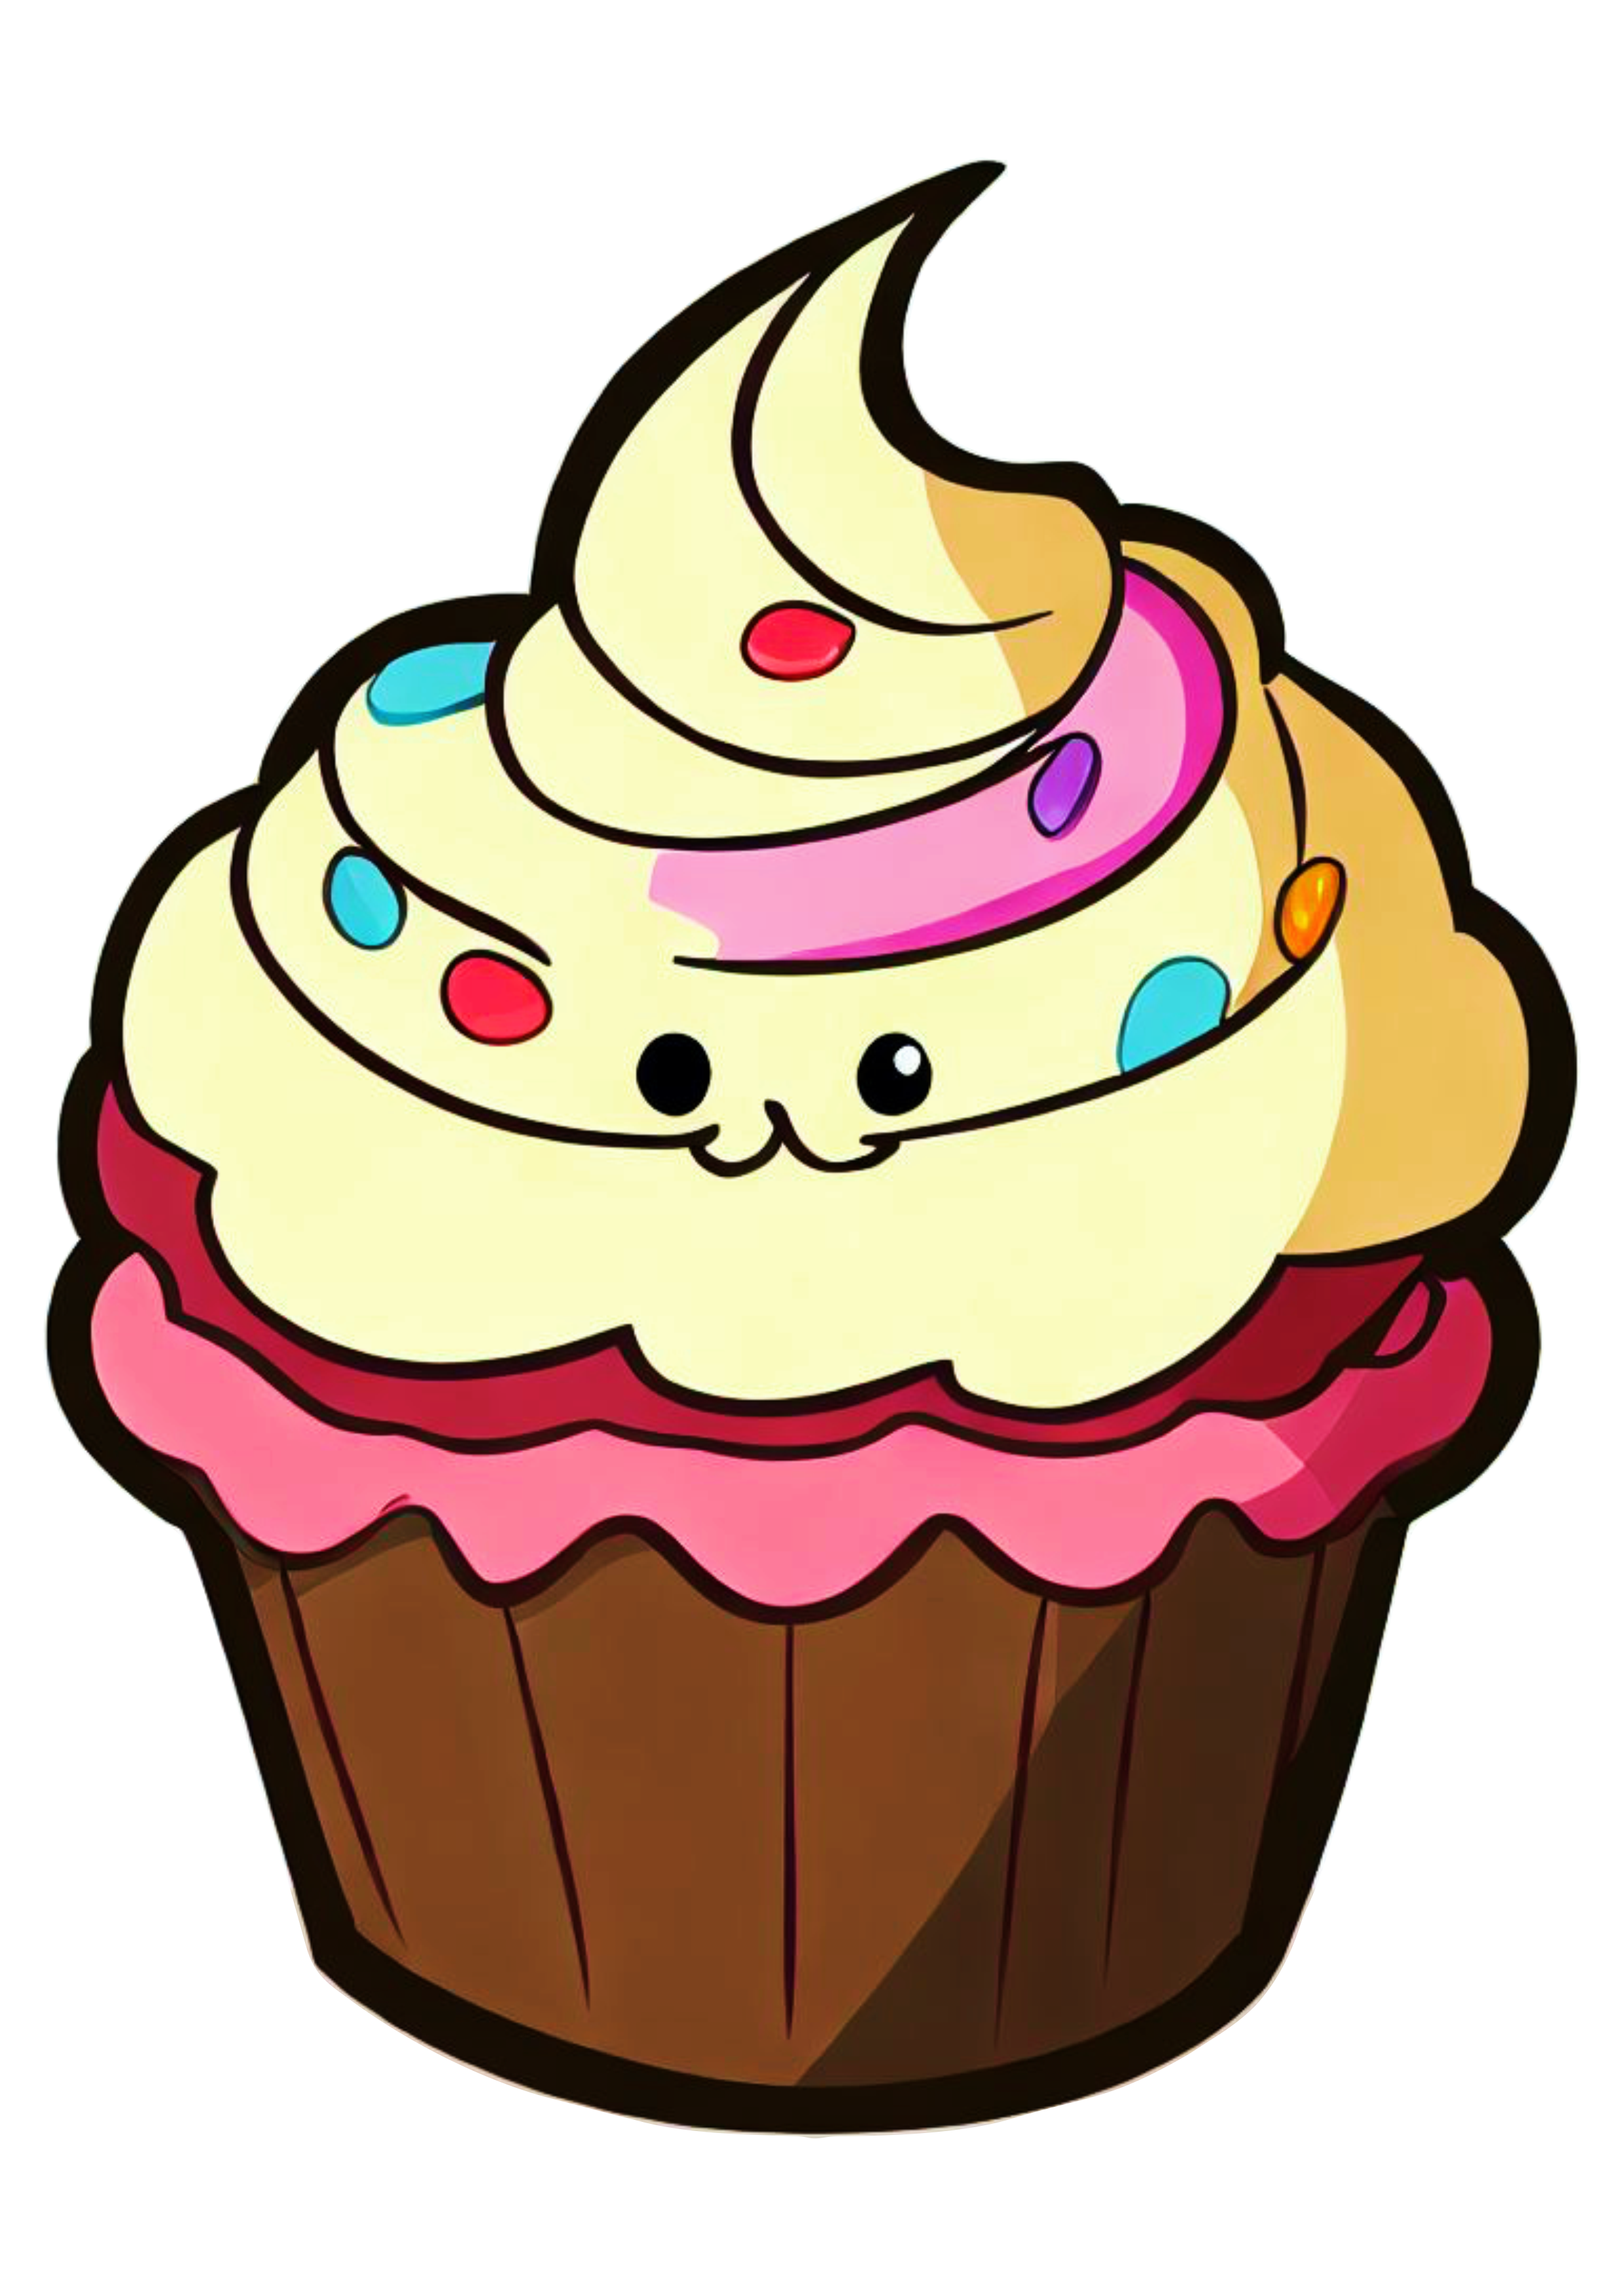 Bolo de aniversário desenho colorido ilustração cupcake png